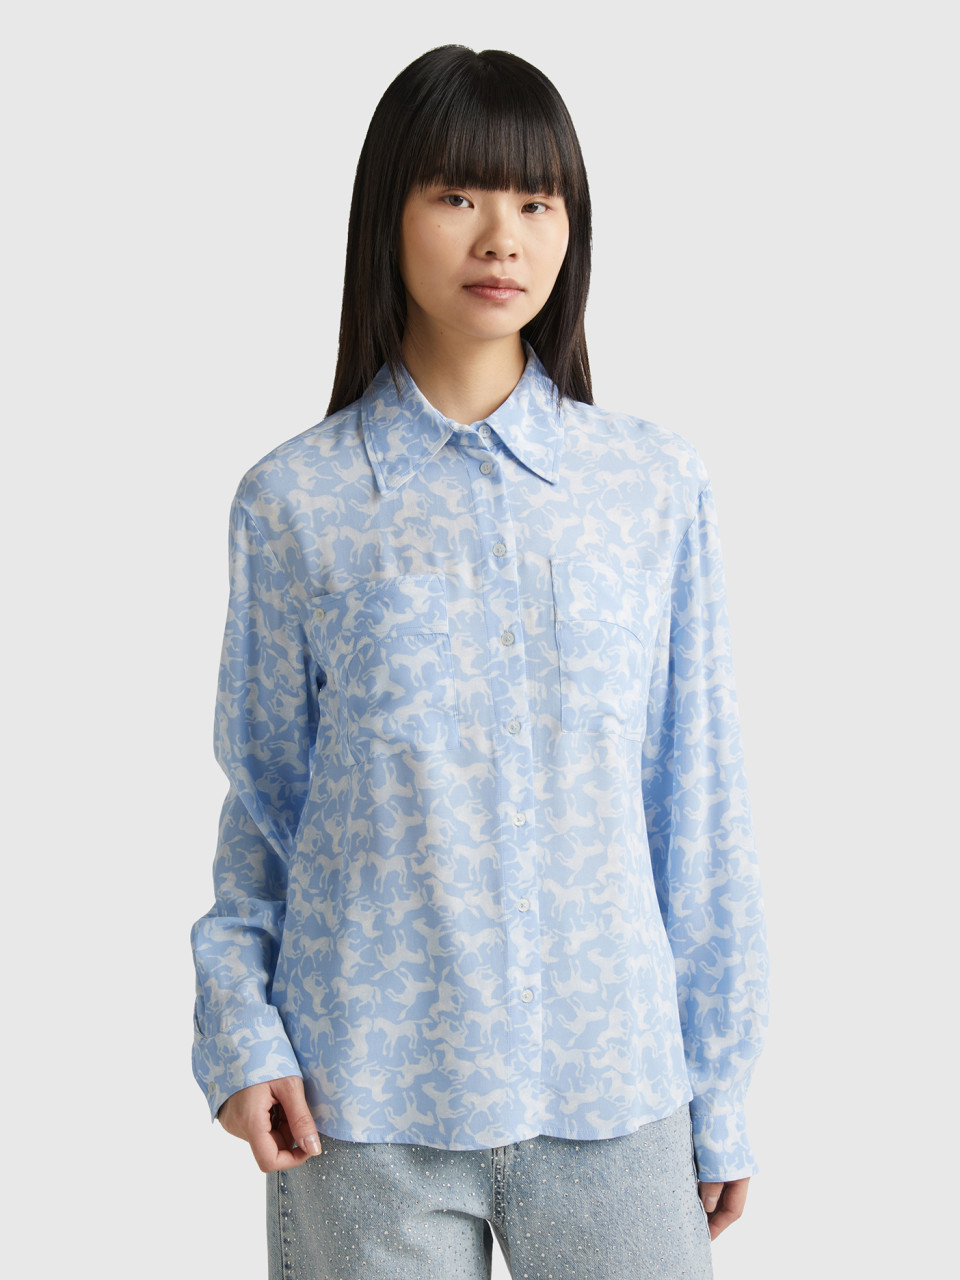 Benetton, Shirt With Horse Print, Sky Blue, Women